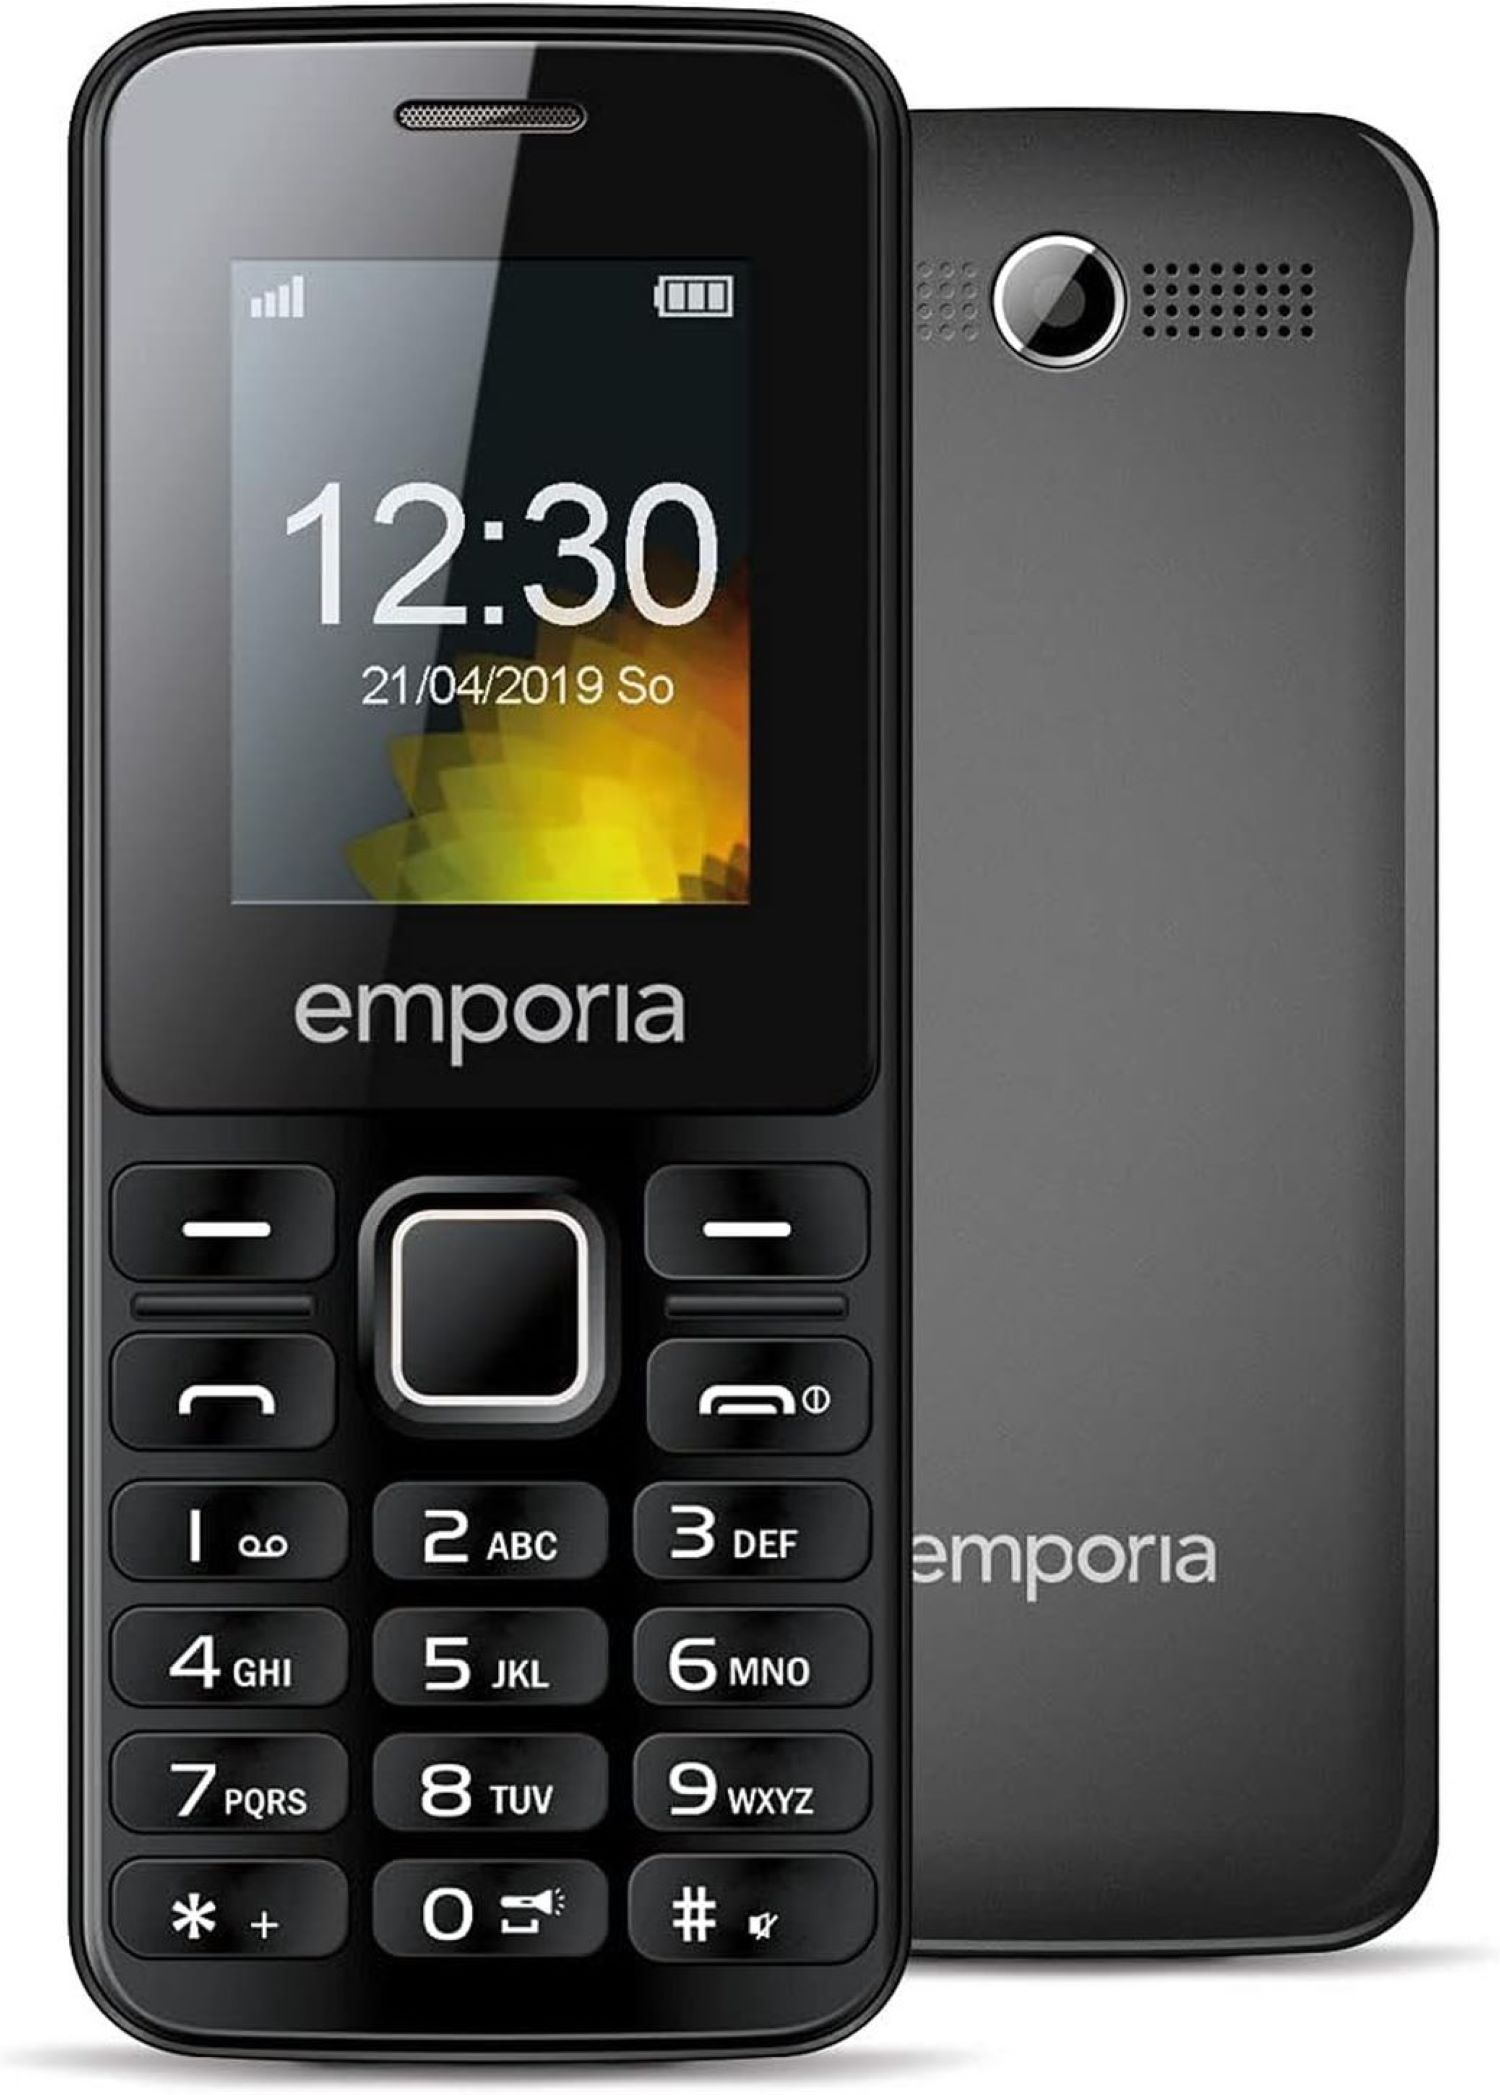 EMPORIA MD212 Mobiltelefon, Schwarz